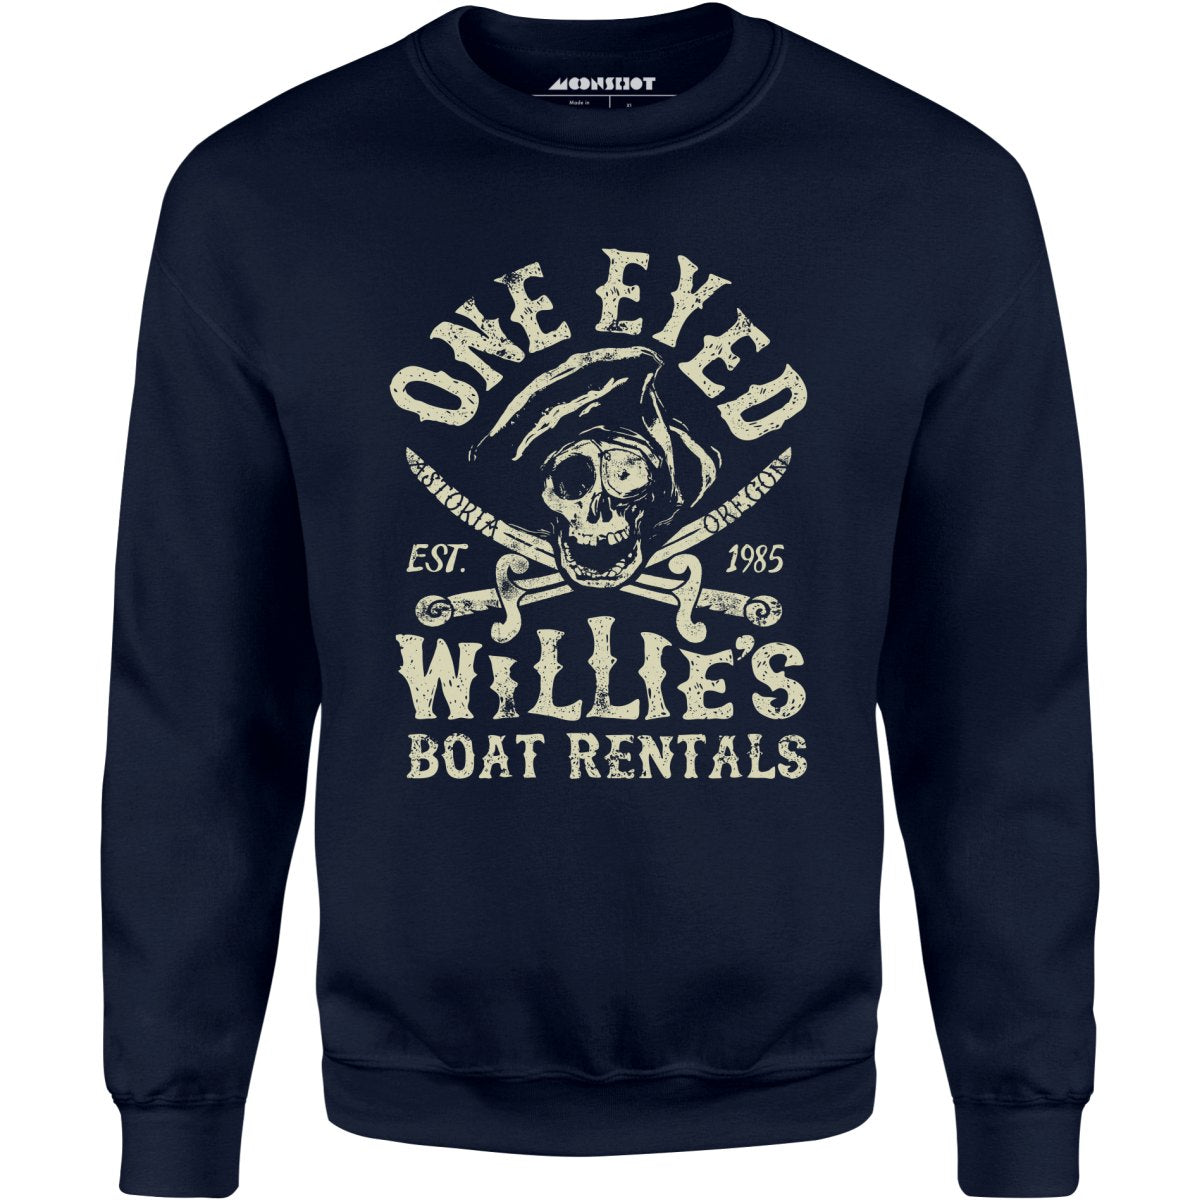 One Eyed Willie's Boat Rentals - Unisex Sweatshirt